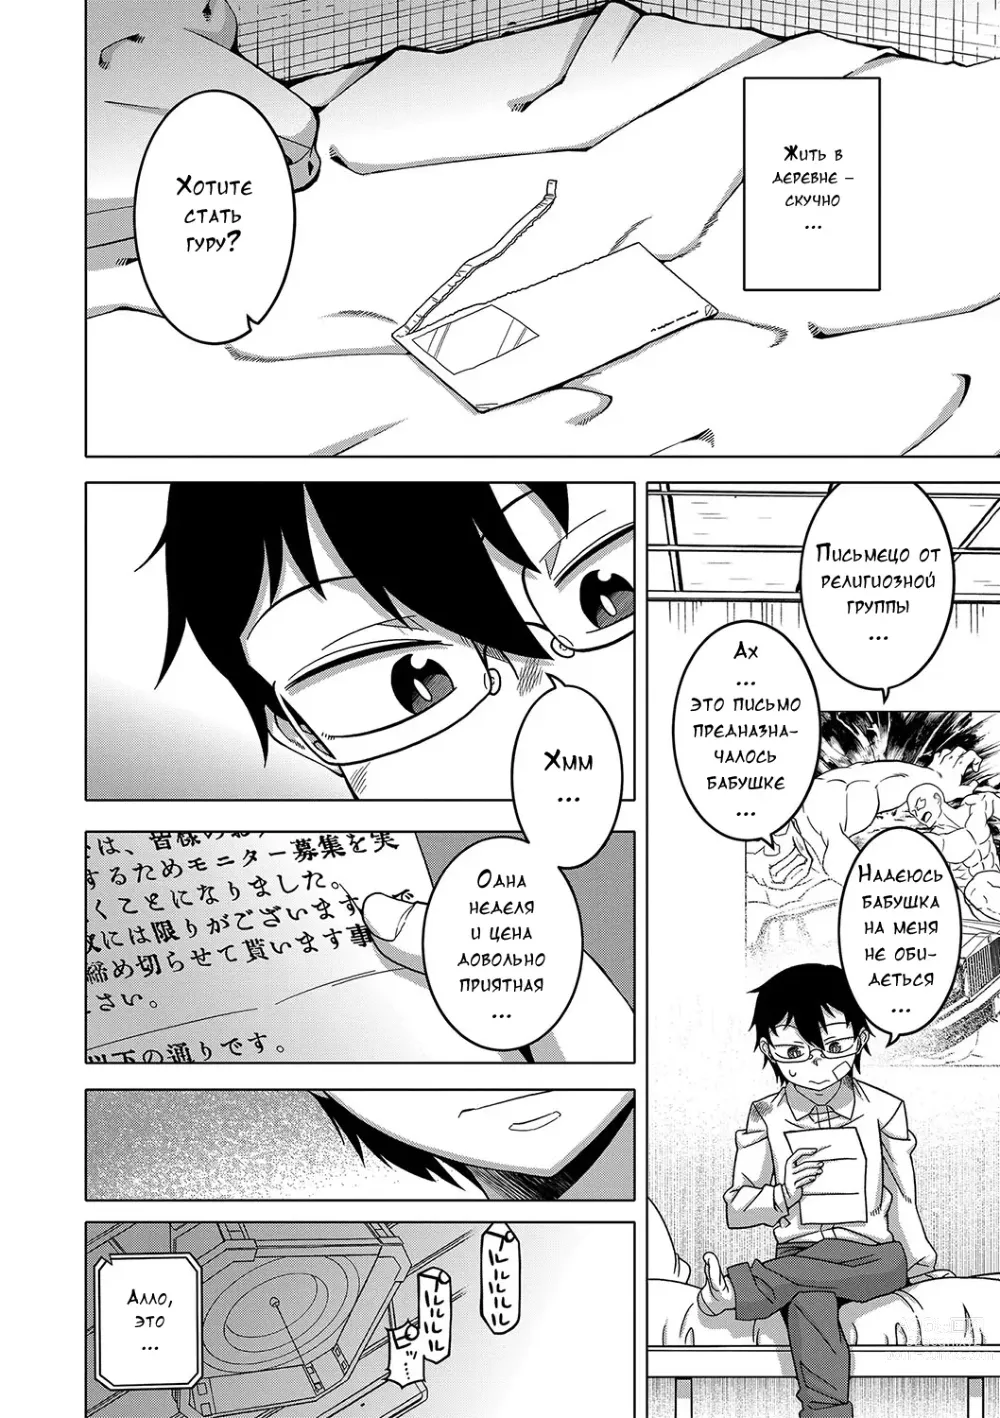 Page 8 of manga Kami-sama no Tsukurikata